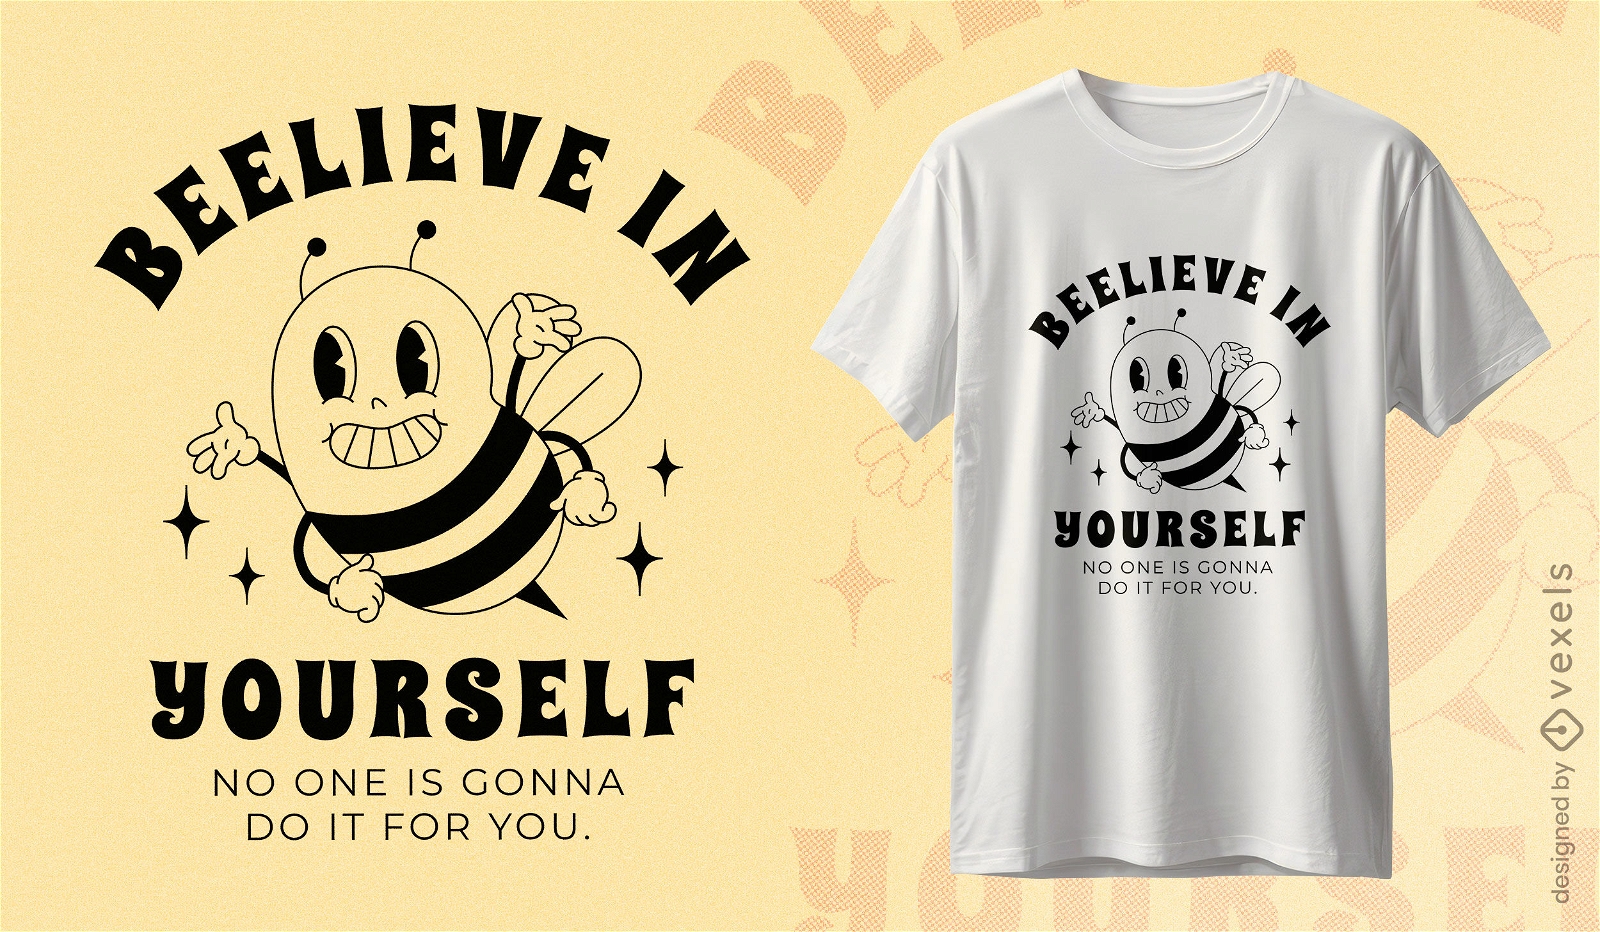 Self-belief bee t-shirt design